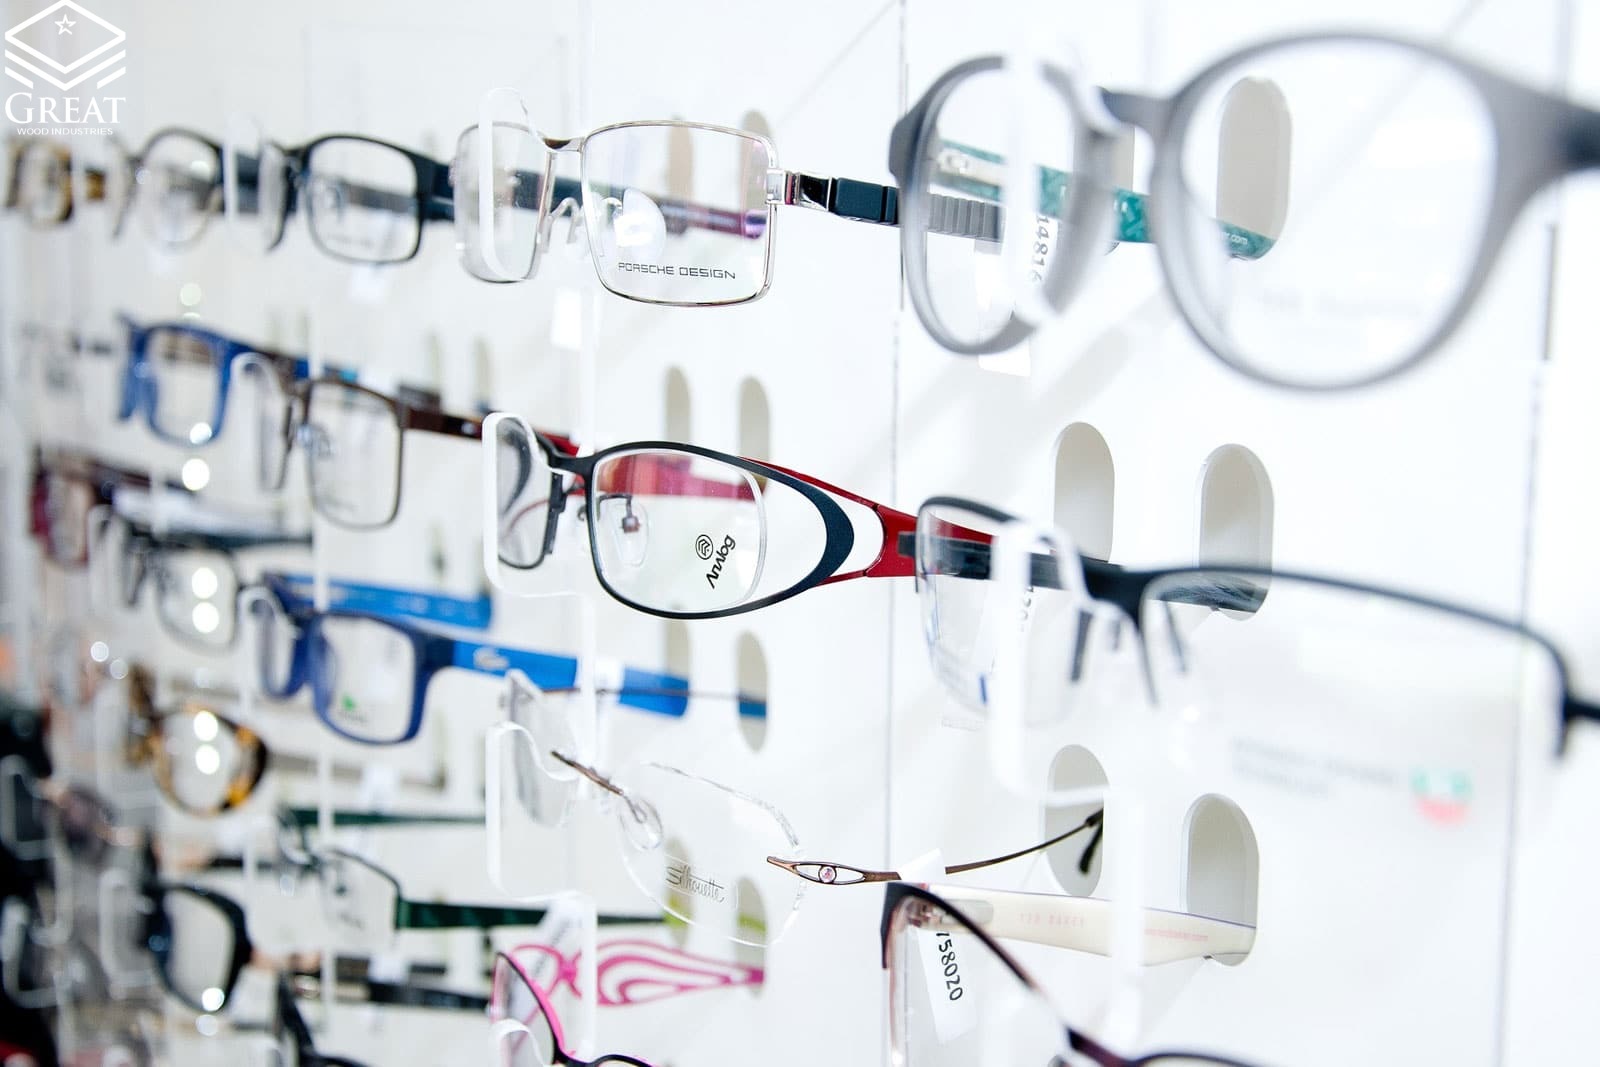 گریت کابینت | شرکت کابینت آشپزخانه گریت | eyeglass display2 ink